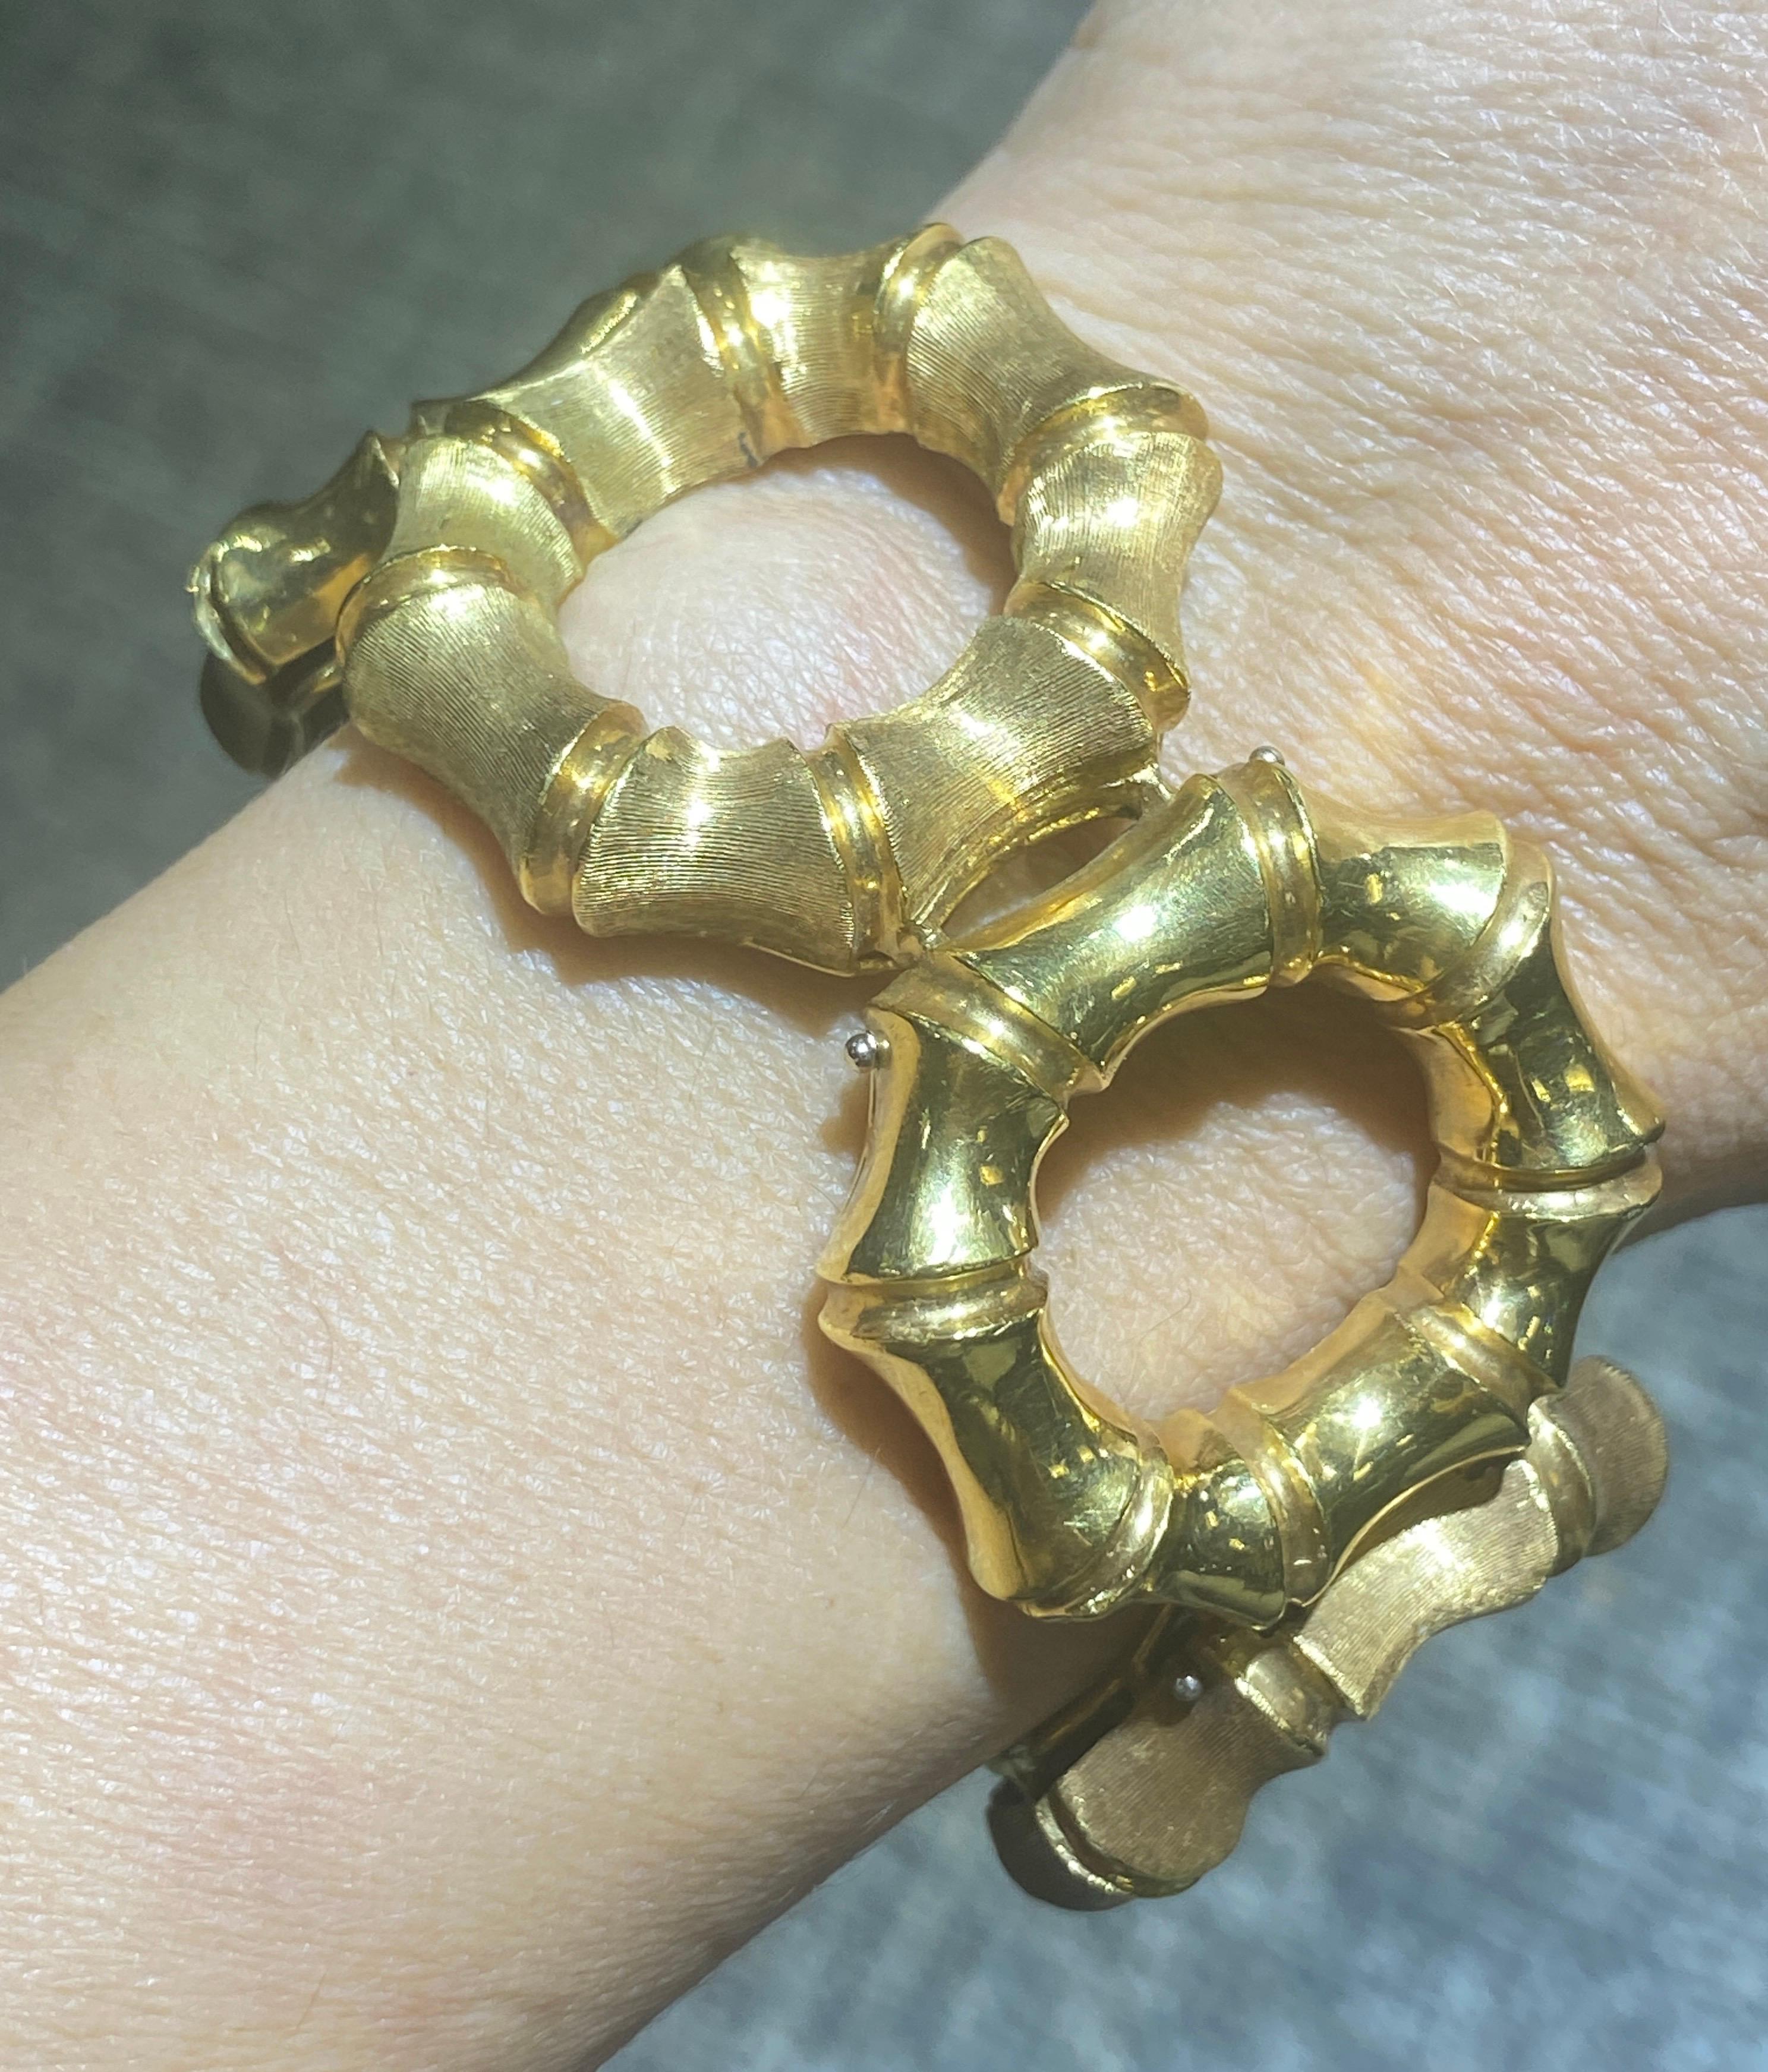 Ce bracelet européen des années 1970 est en or 18 carats. Il est constitué d'une alternance de sections d'or gravé et d'or poli, ce qui lui confère un aspect à la fois mat et brillant. Cette gravure est le résultat d'un travail très soigné. Bien